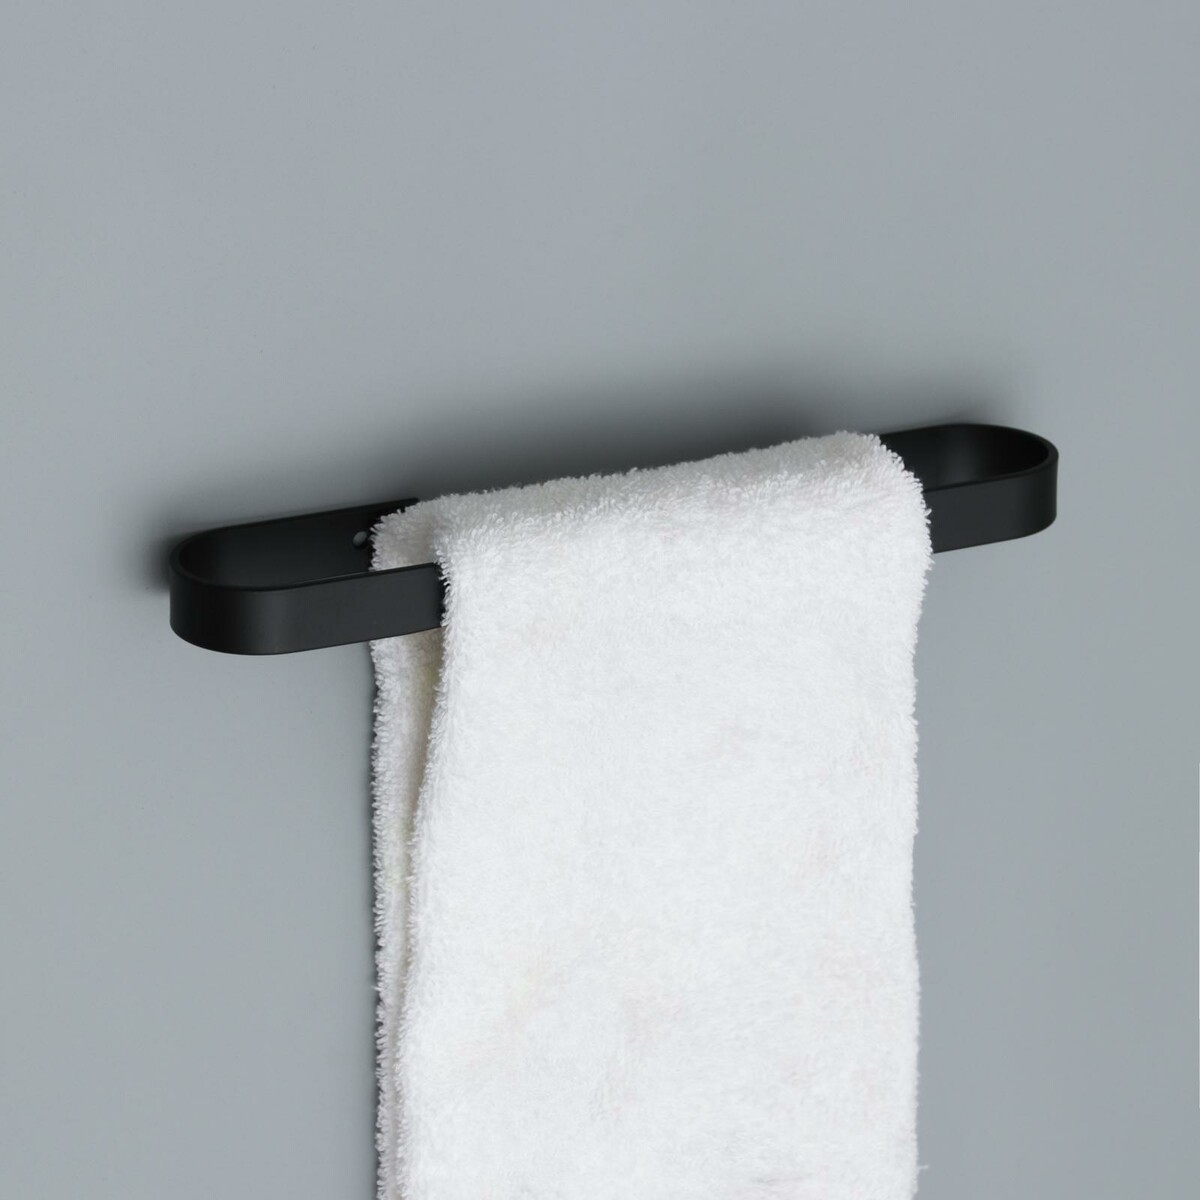 Держатель для полотенец штольц stölz, 24×6 см, цвет черный держатель для полотенец в виде кольца wasserkraft oder 3060 9060201